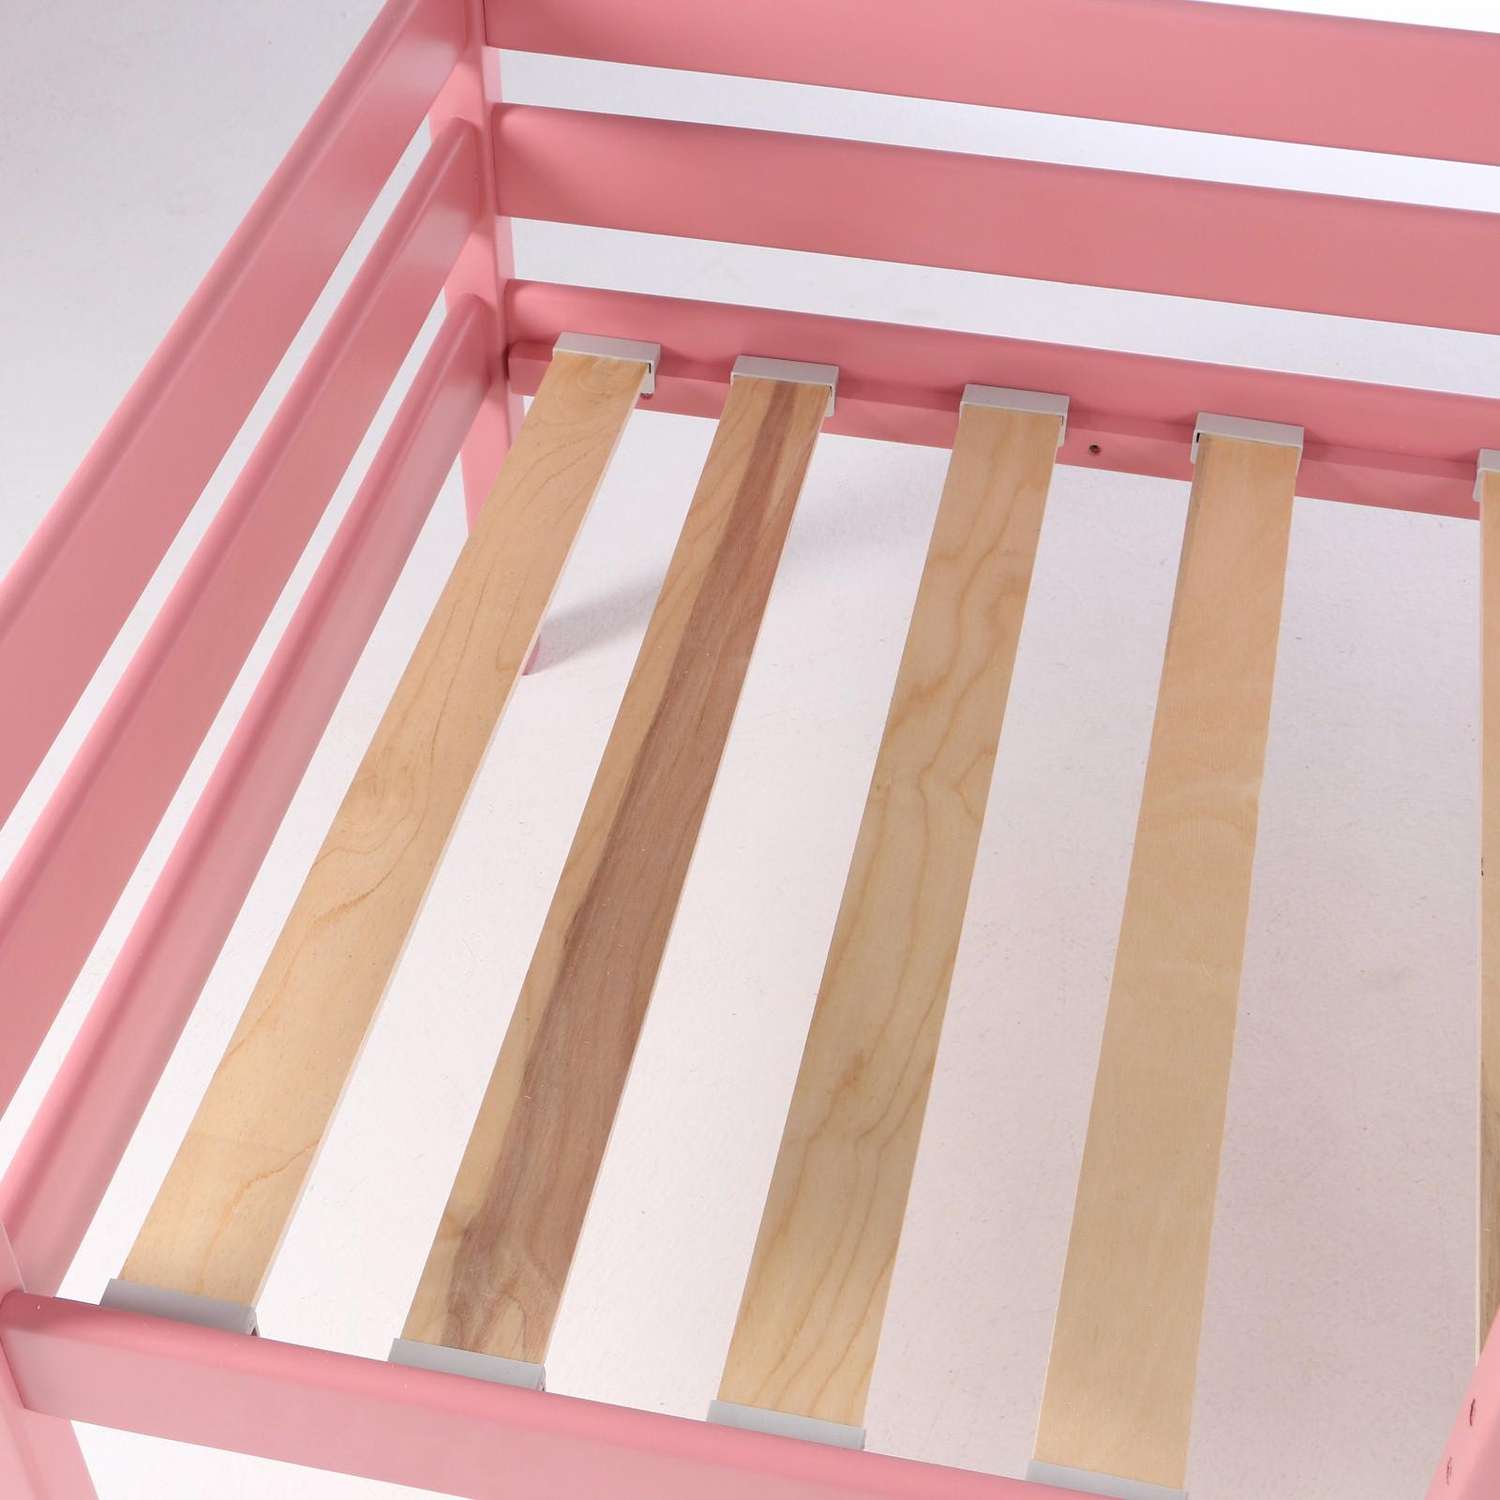 Кровать Клик Мебель Сева спальное место 1600х800 цвет Розовый пастельный Массив Берёзы - фото 5